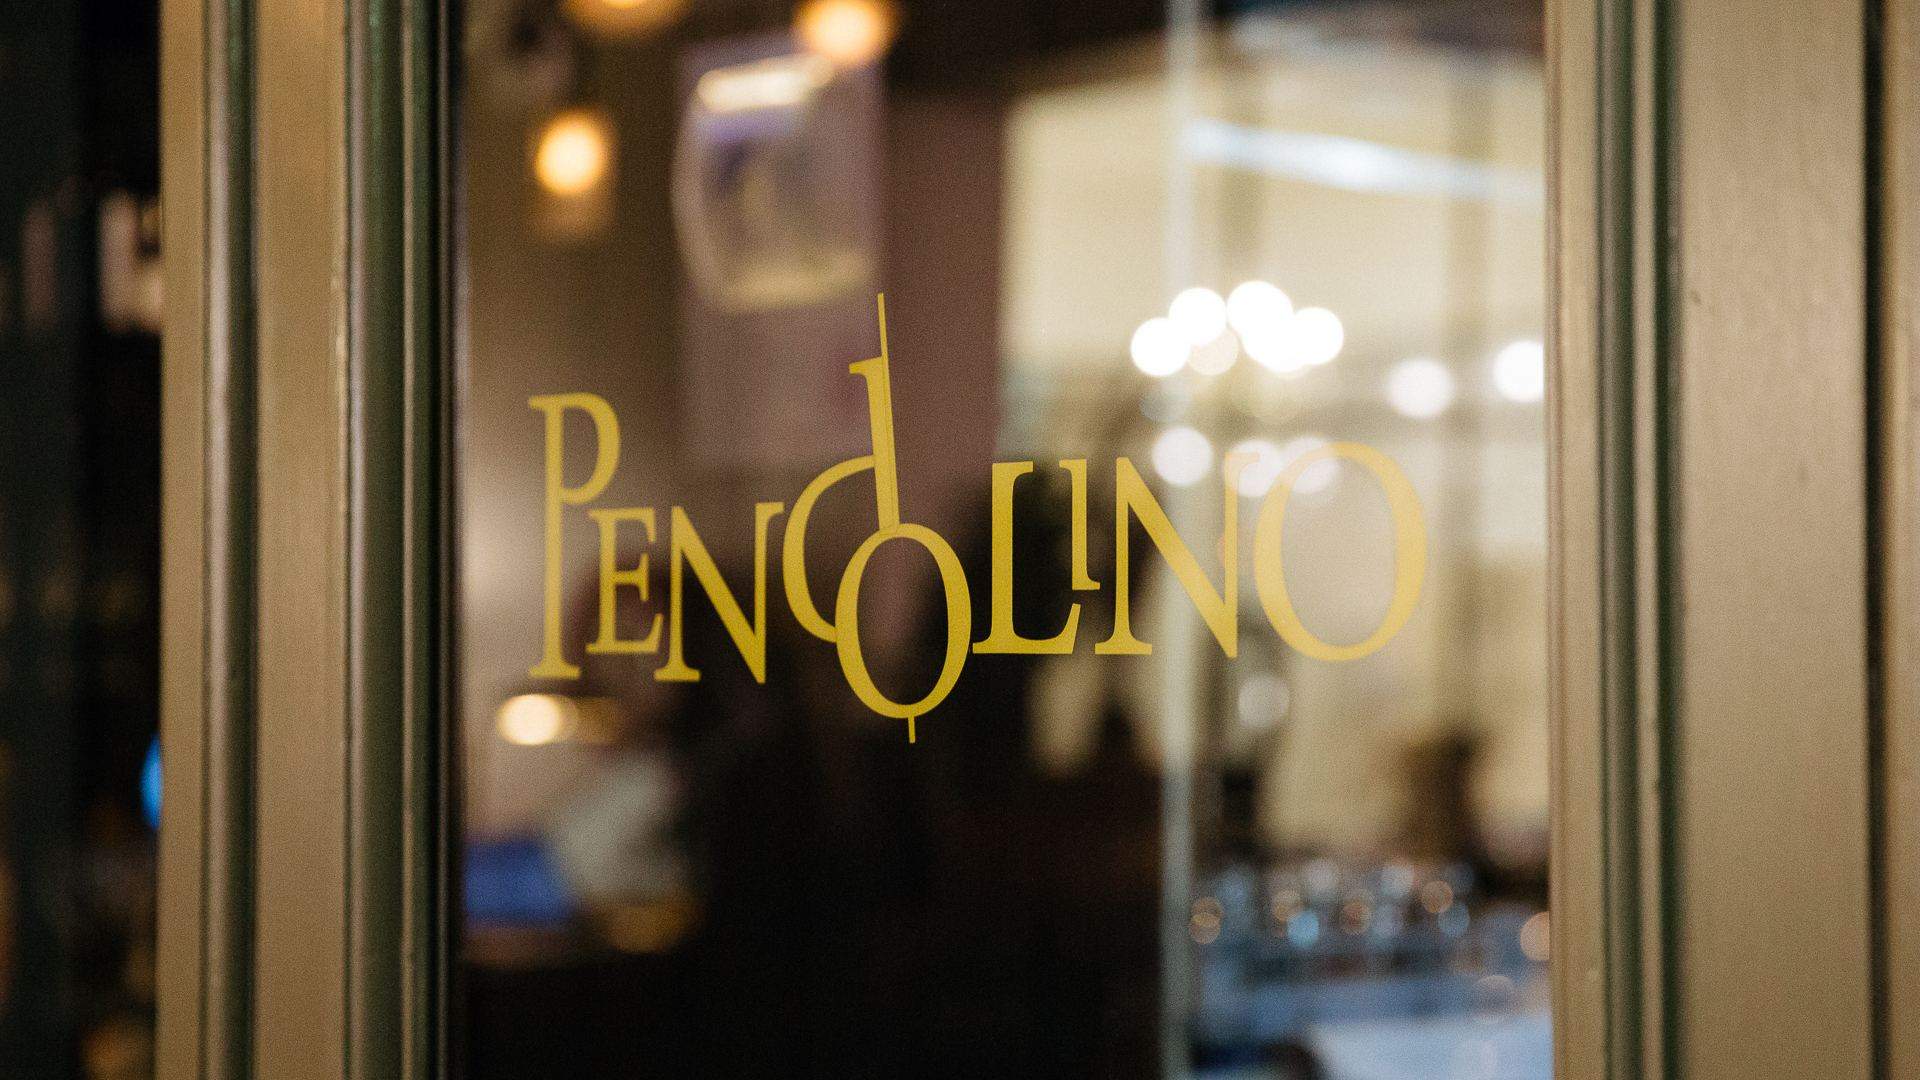 The Restaurant Pendolino